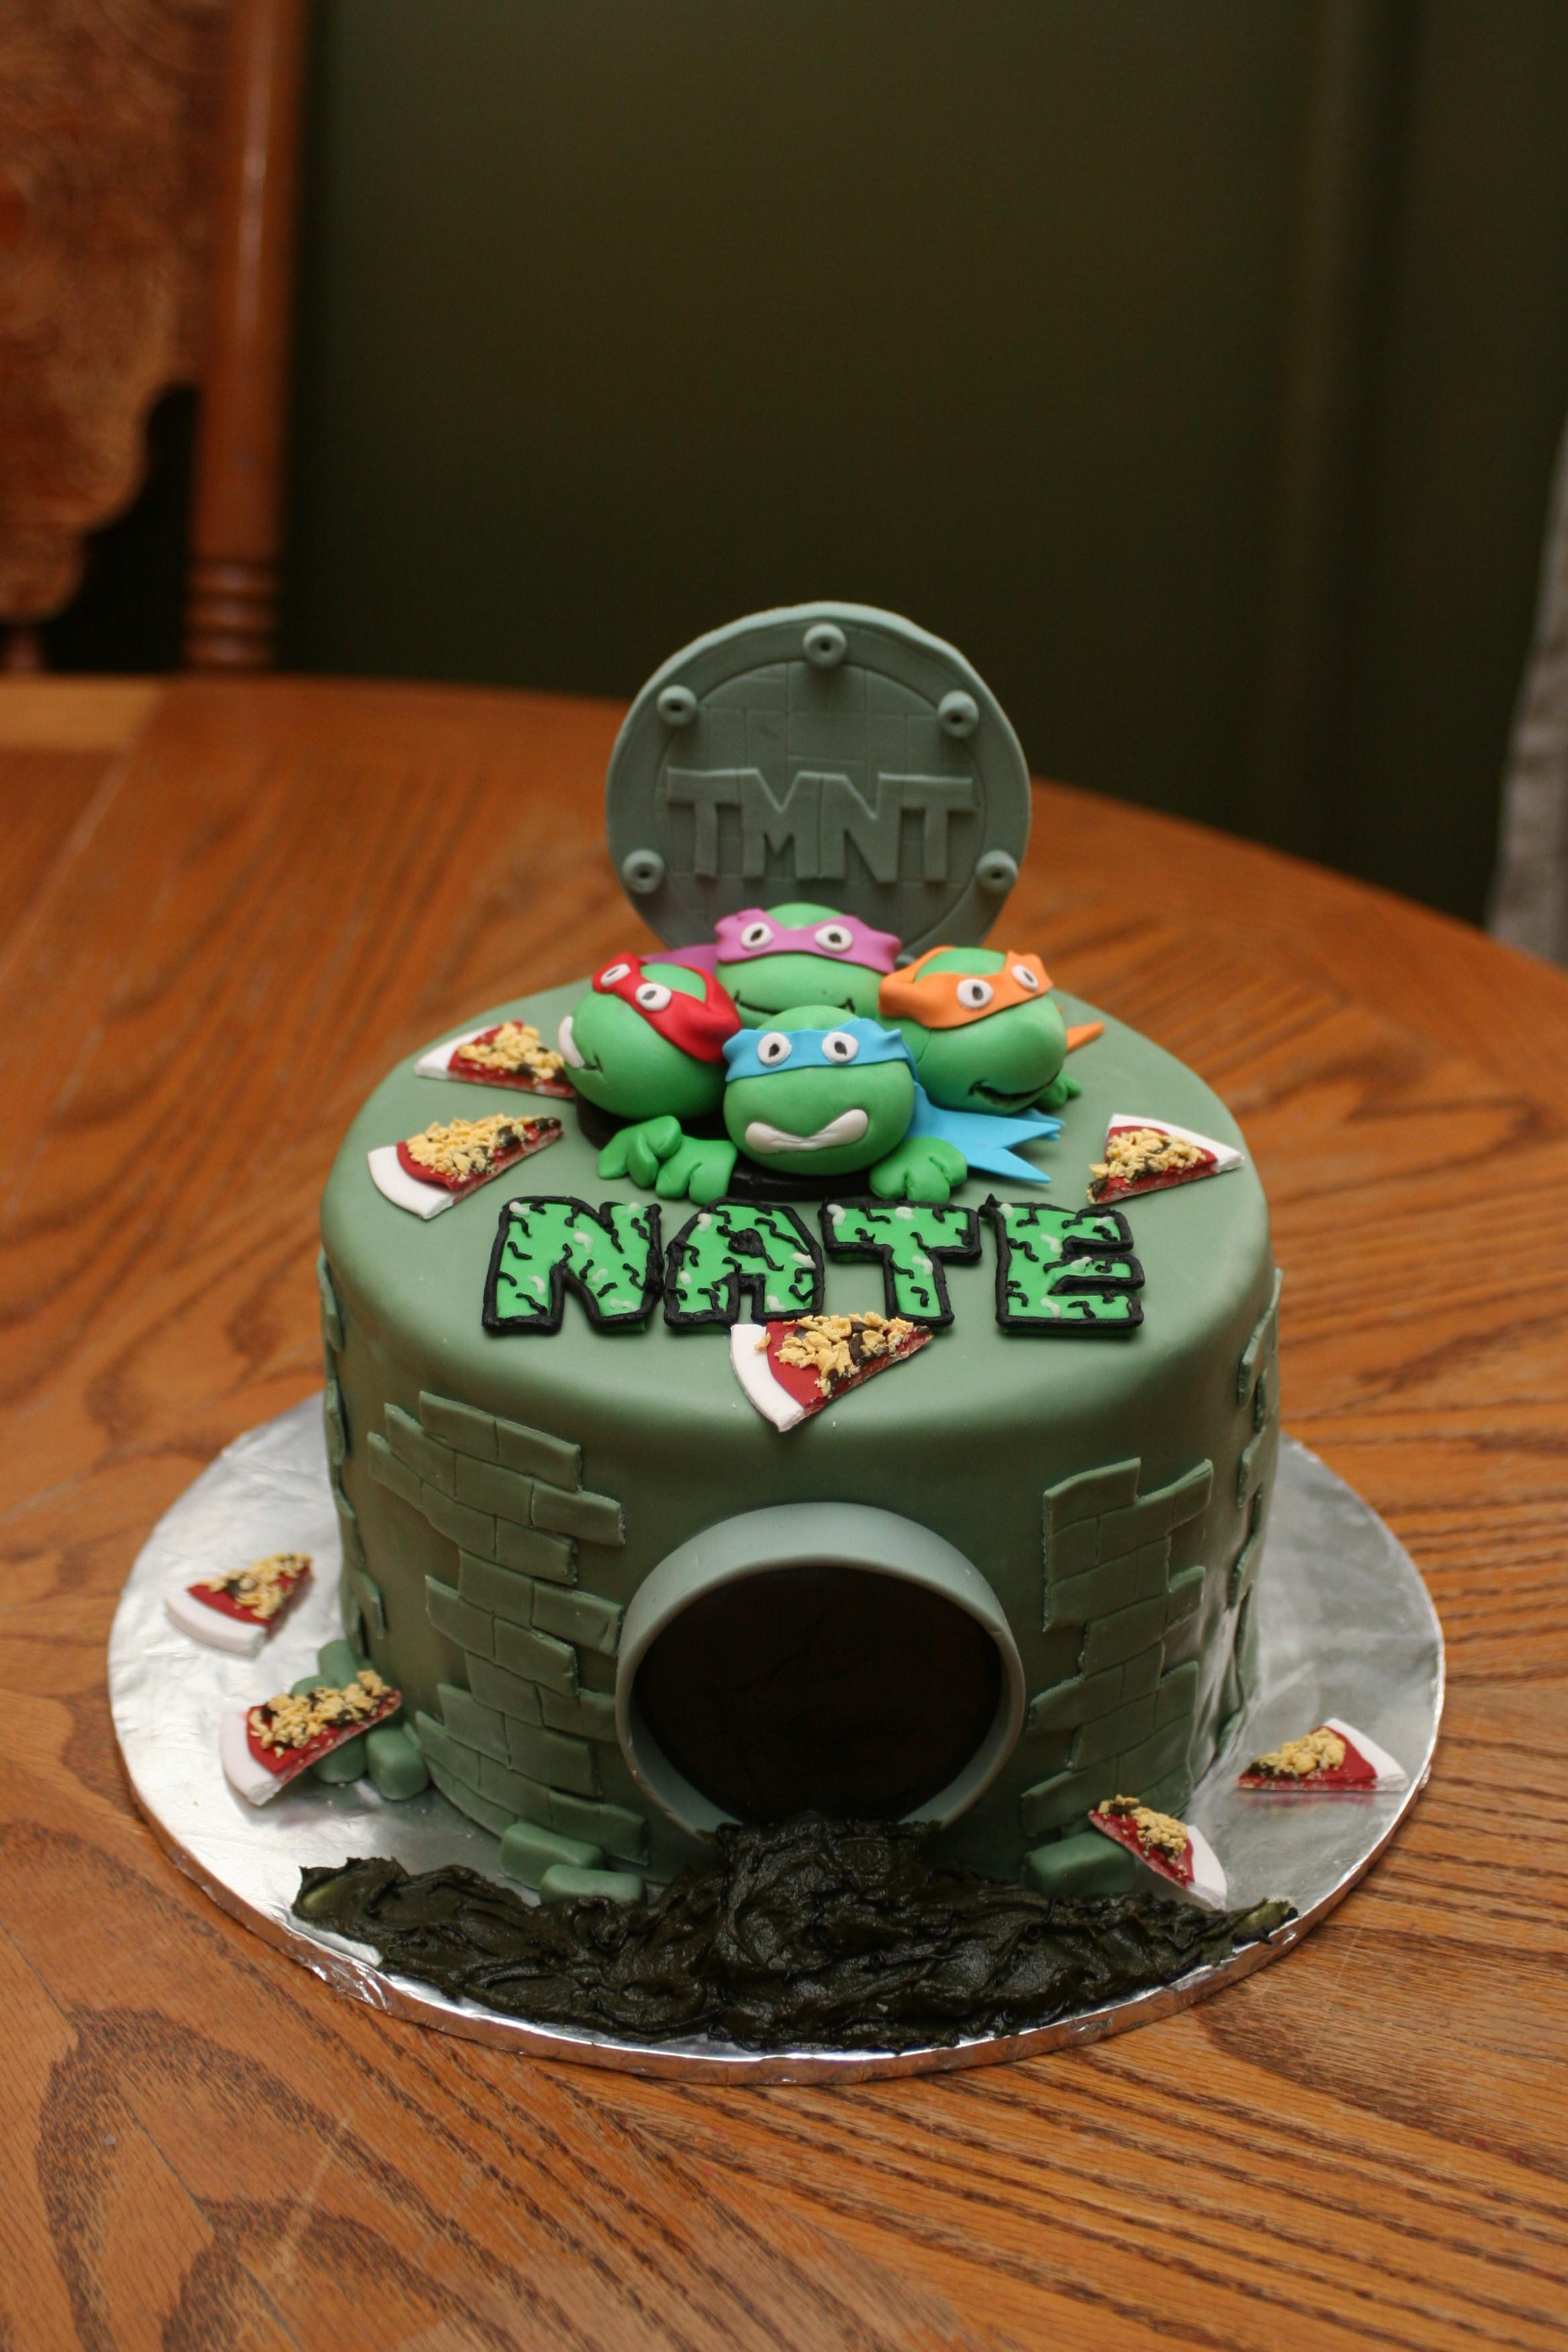 Best ideas about Teenage Mutant Ninja Turtle Birthday Cake
. Save or Pin Teenage Mutant Ninja Turtles Cake Now.